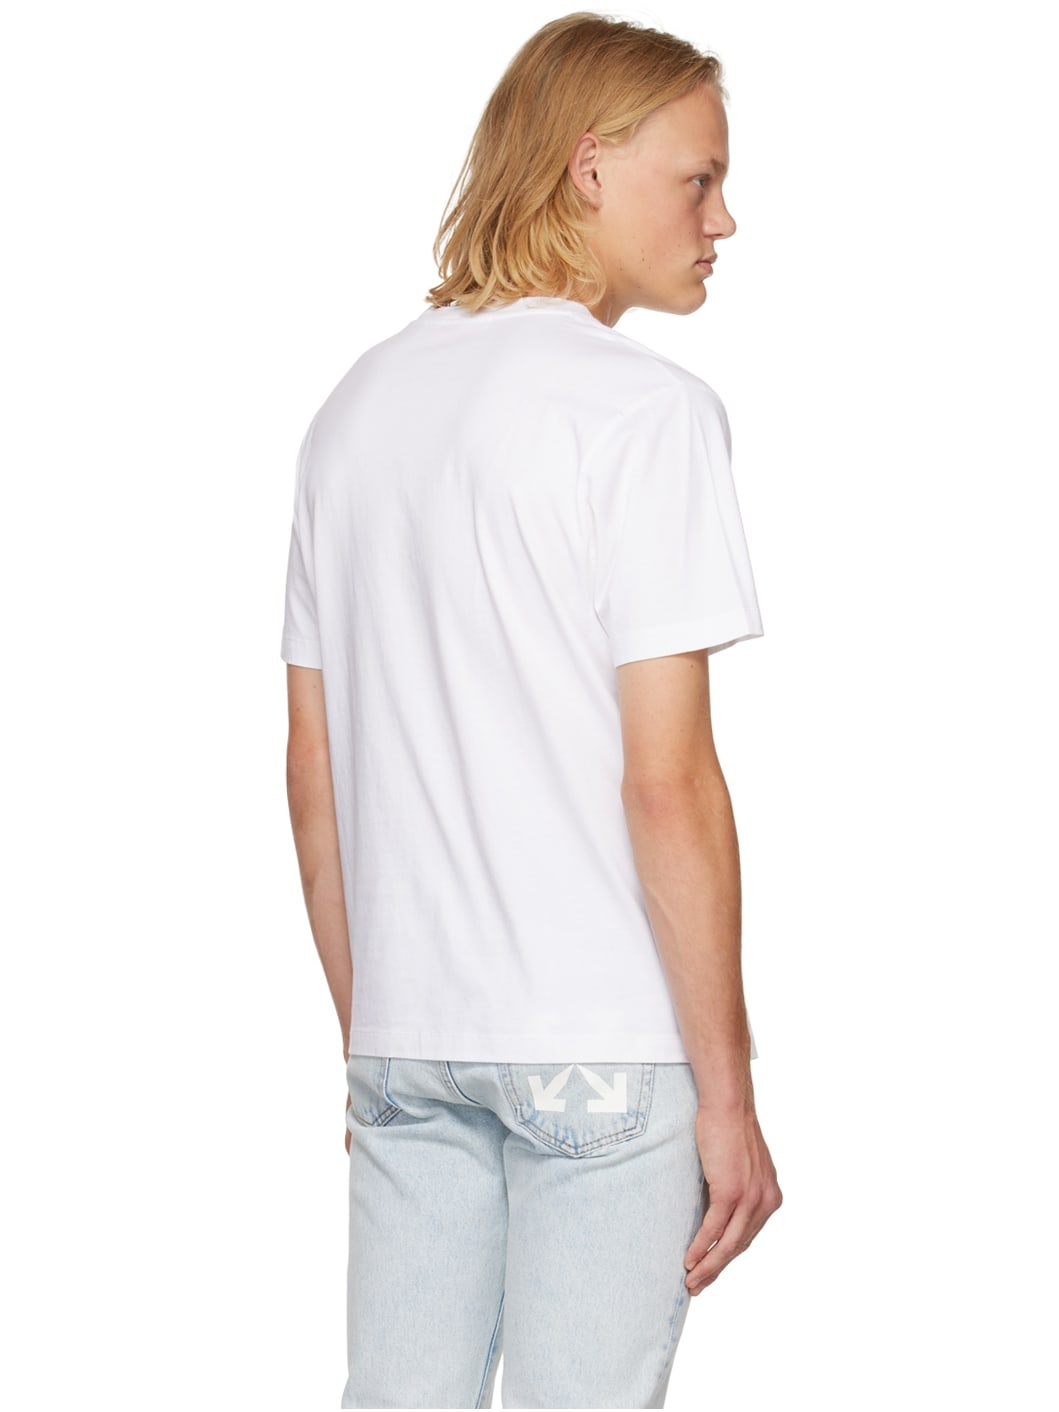 White Helvetica T-Shirt - 3